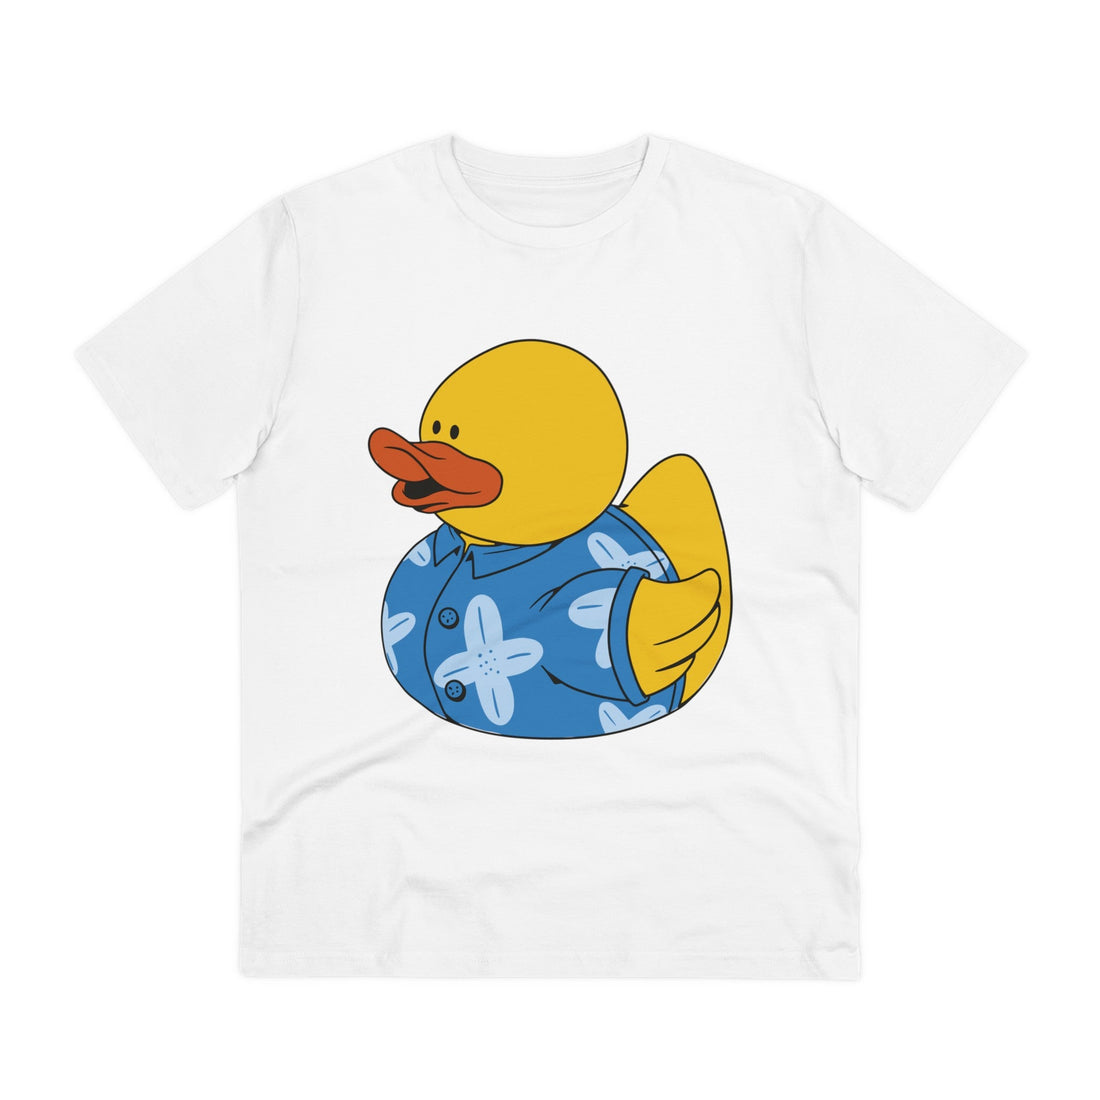 Printify T-Shirt White / 2XS Hawaiian Shirt - Rubber Duck - Front Design